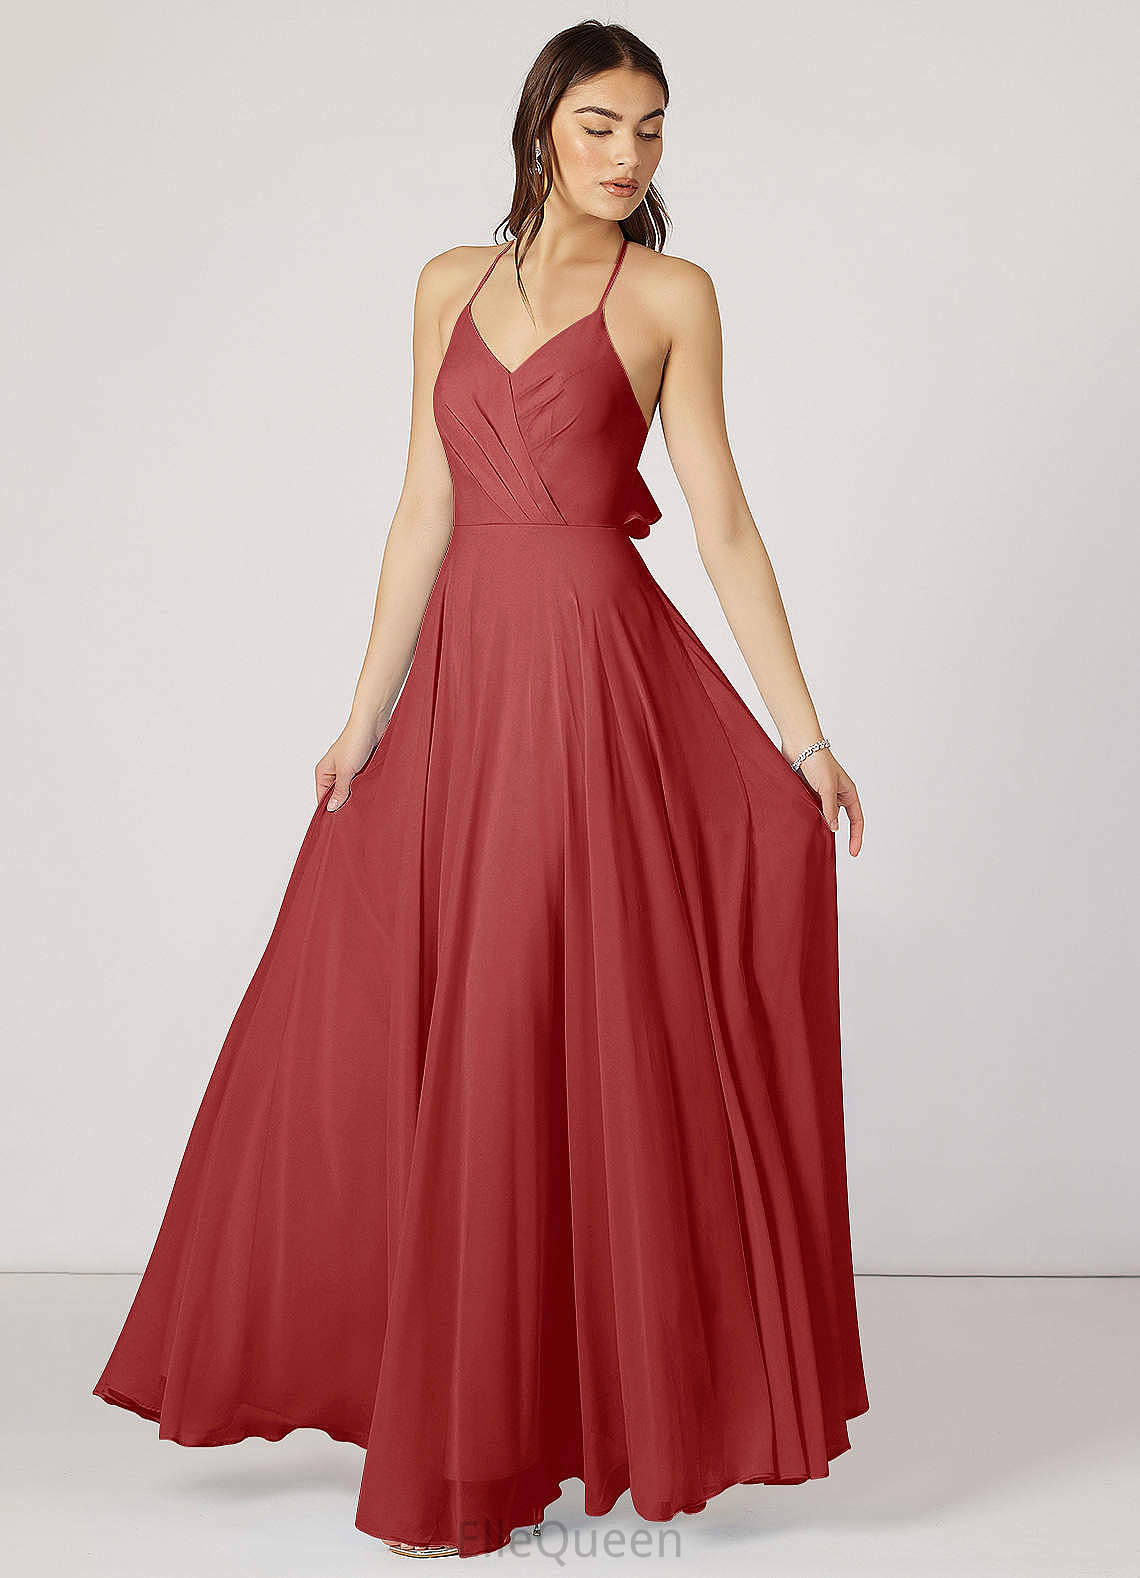 Gill A-Line/Princess V-Neck Half Sleeves Floor Length Empire Waist Bridesmaid Dresses